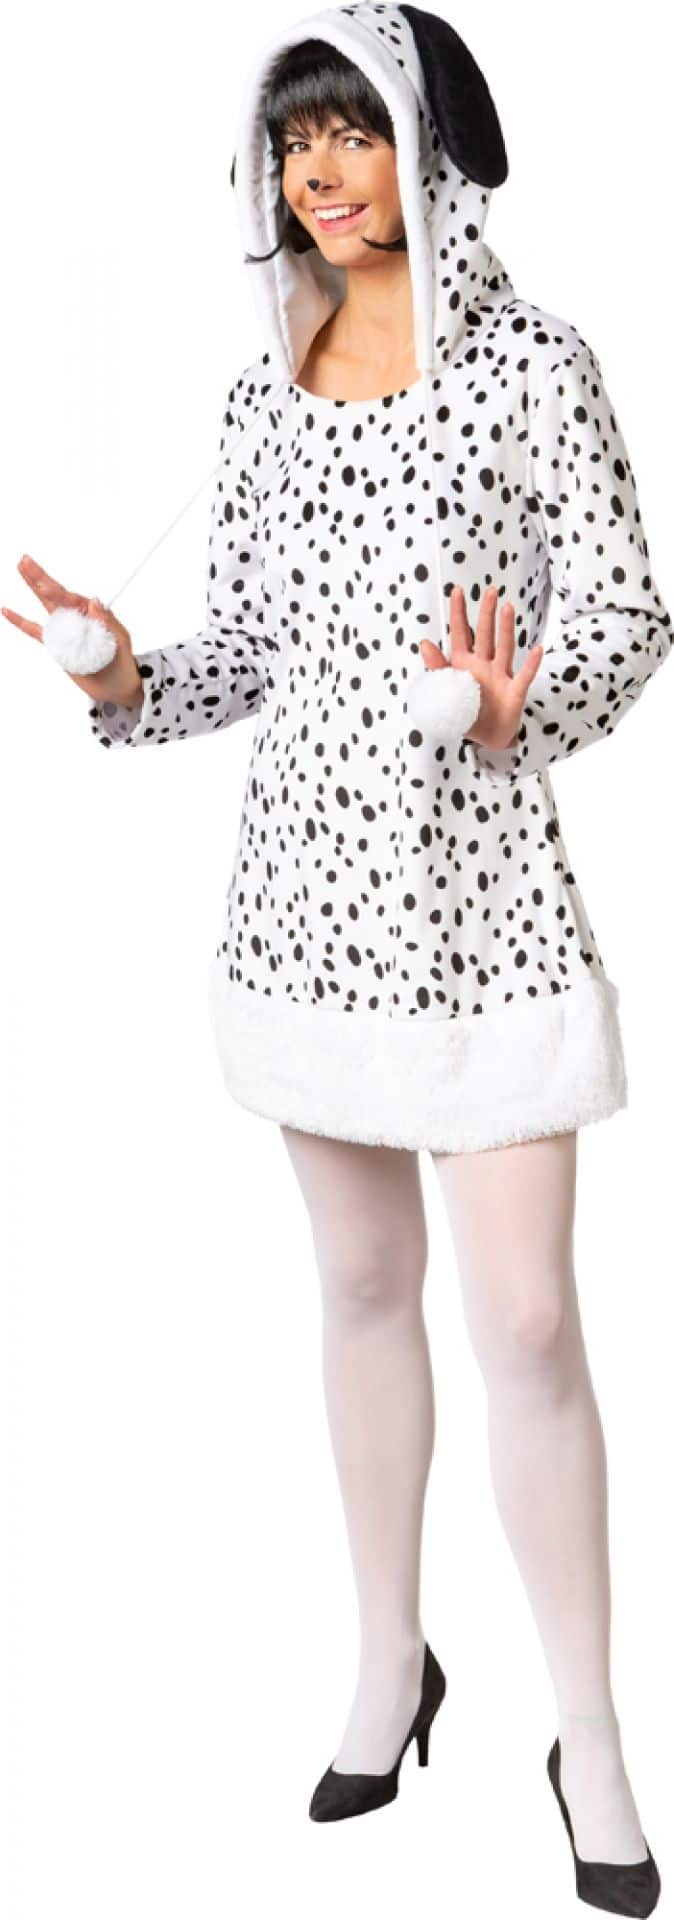 Kostüm: Dalmatiner-Kleid  Größe: 42/44